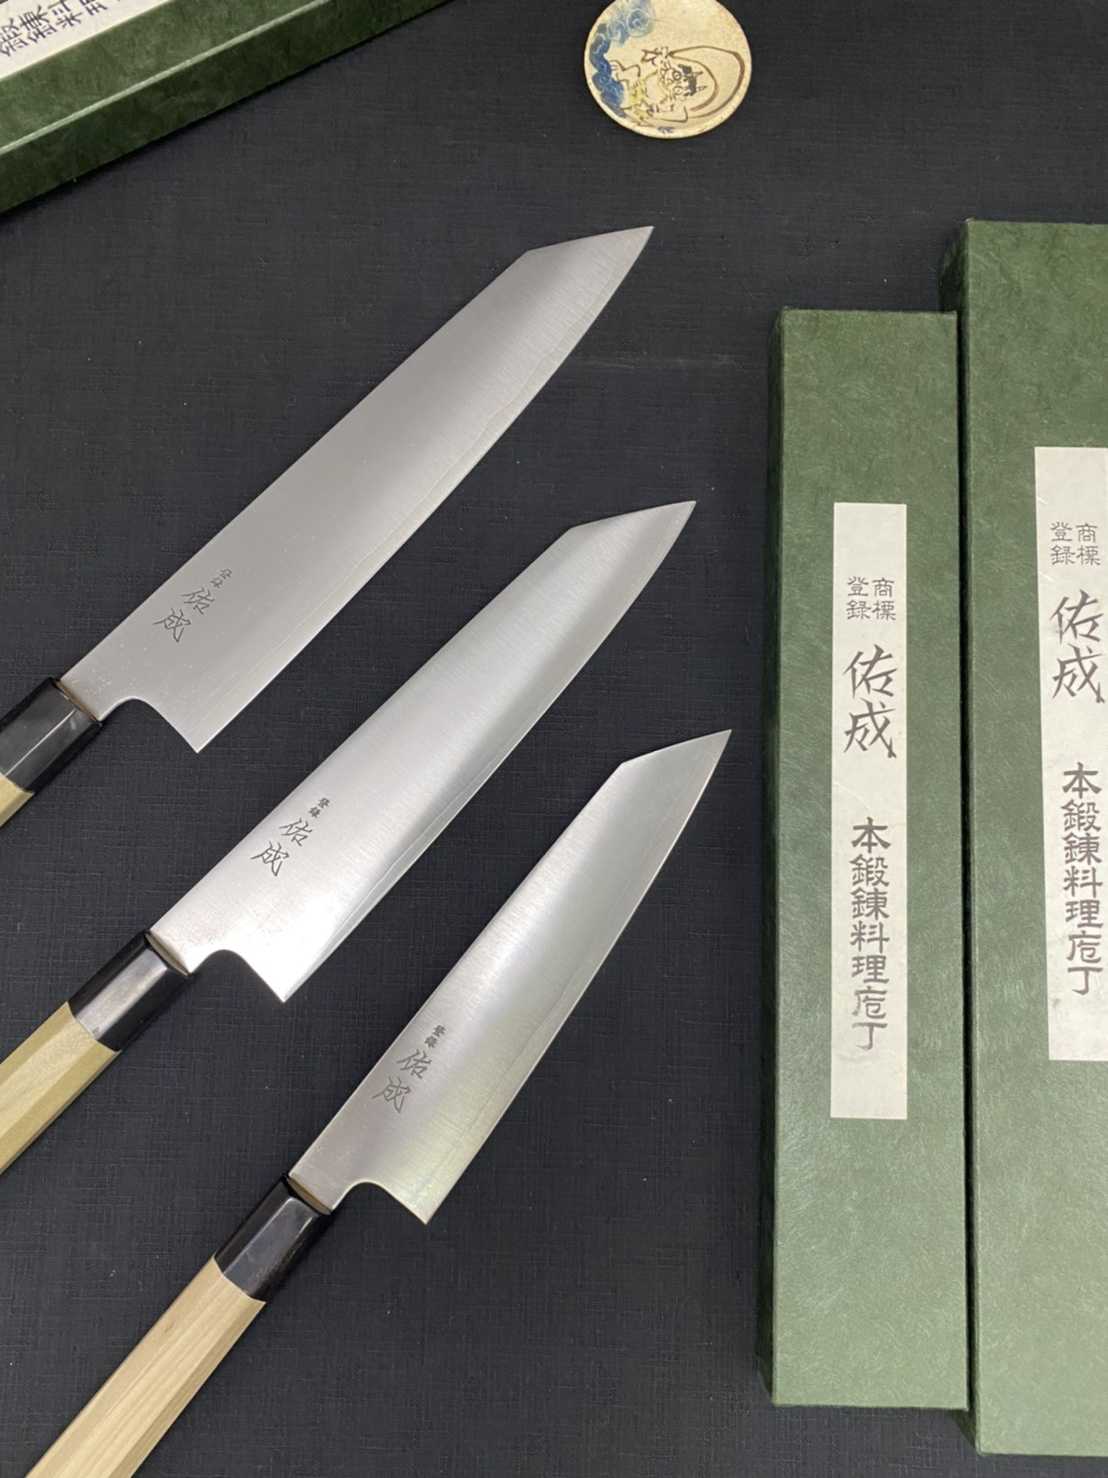 💖現貨💖 佑成【 SG-2 粉末鋼 (抗鏽) 劍形和牛刀 24cm 】日本製 廚房刀具 八煌刃物💖現貨💖